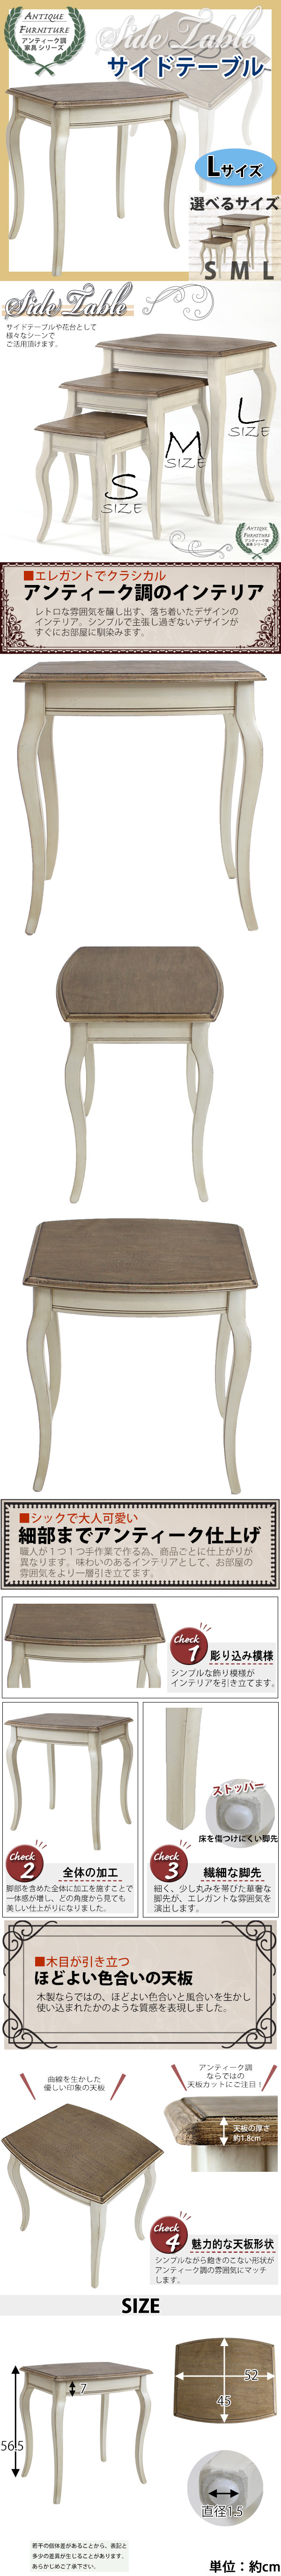 買い特価アンティーク調 サイドテーブル Lサイズ 木製 白 花台 テーブル サイドテーブル